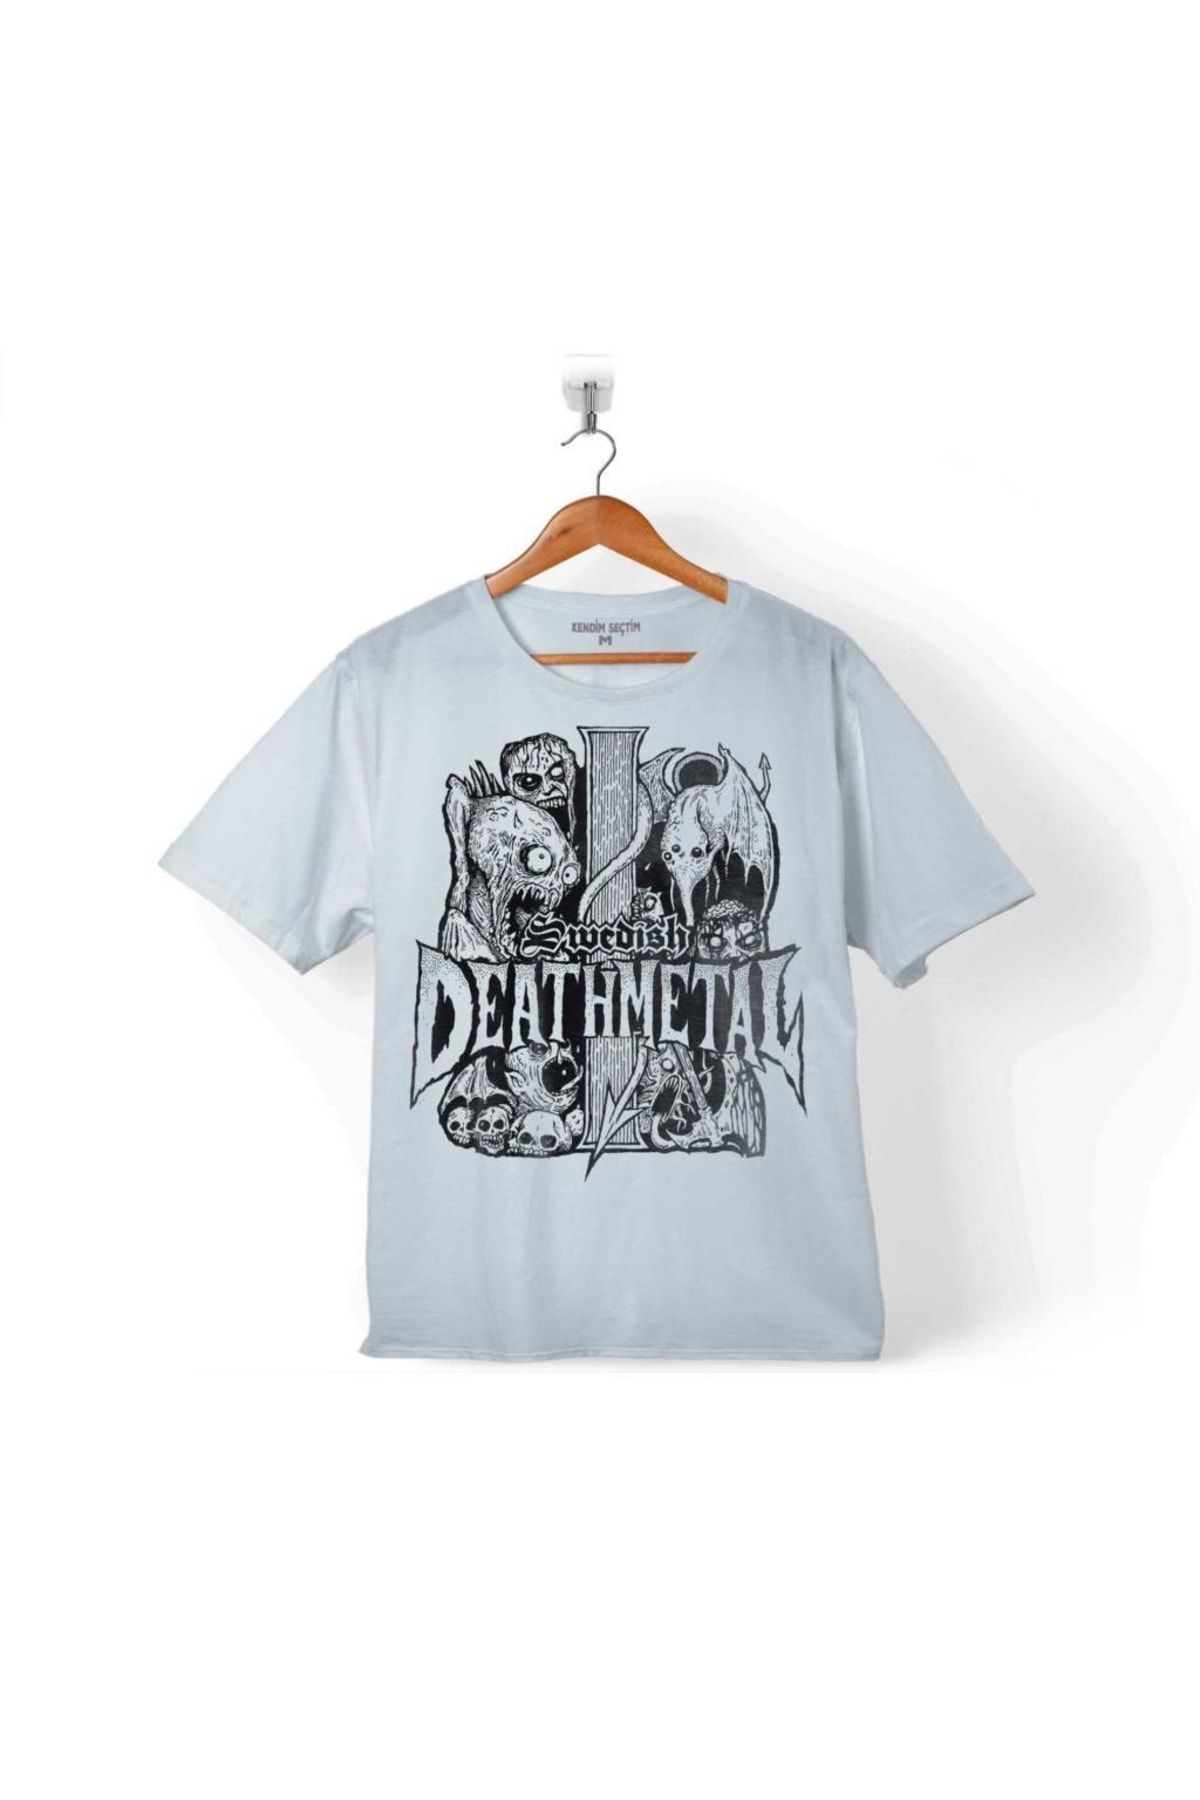 Kendim Seçtim Death Metal Strıke Musıc Band Çocuk Tişört